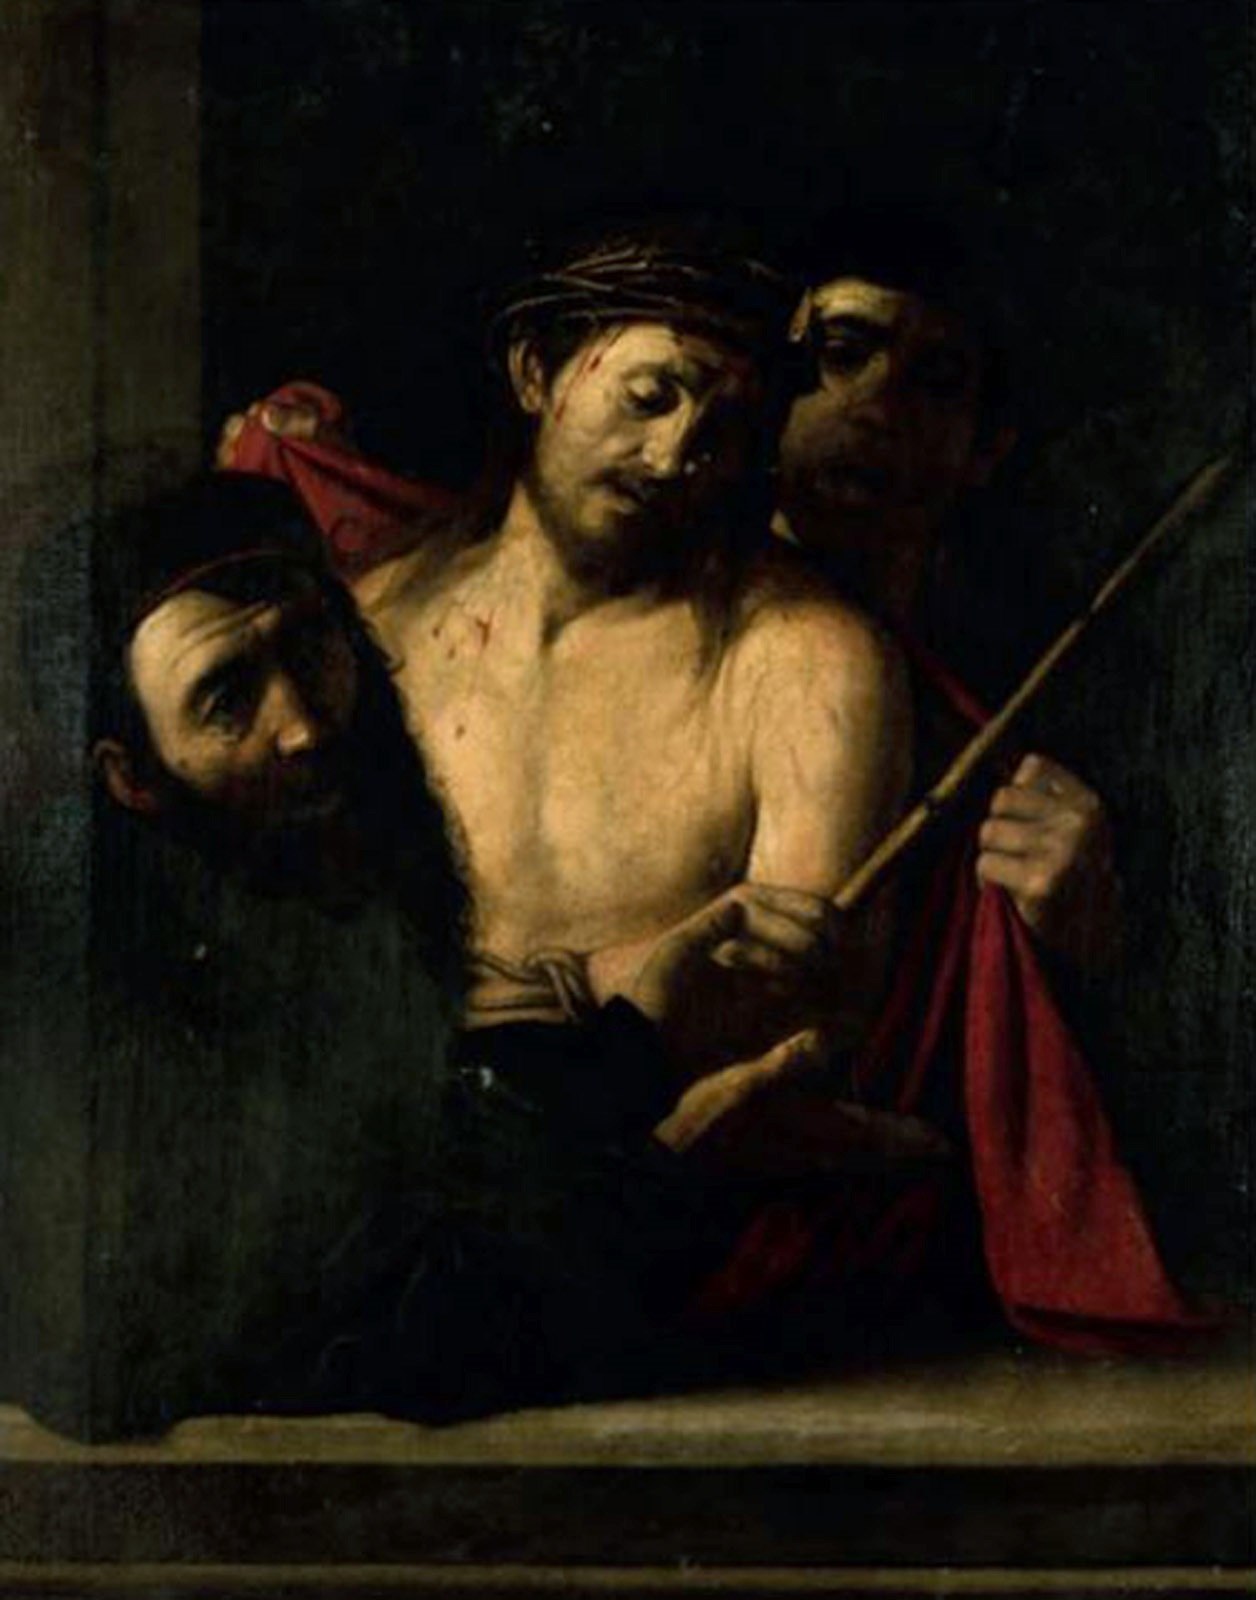 Cuadro retirado de una subasta cuyo autor podra ser Caravaggio.